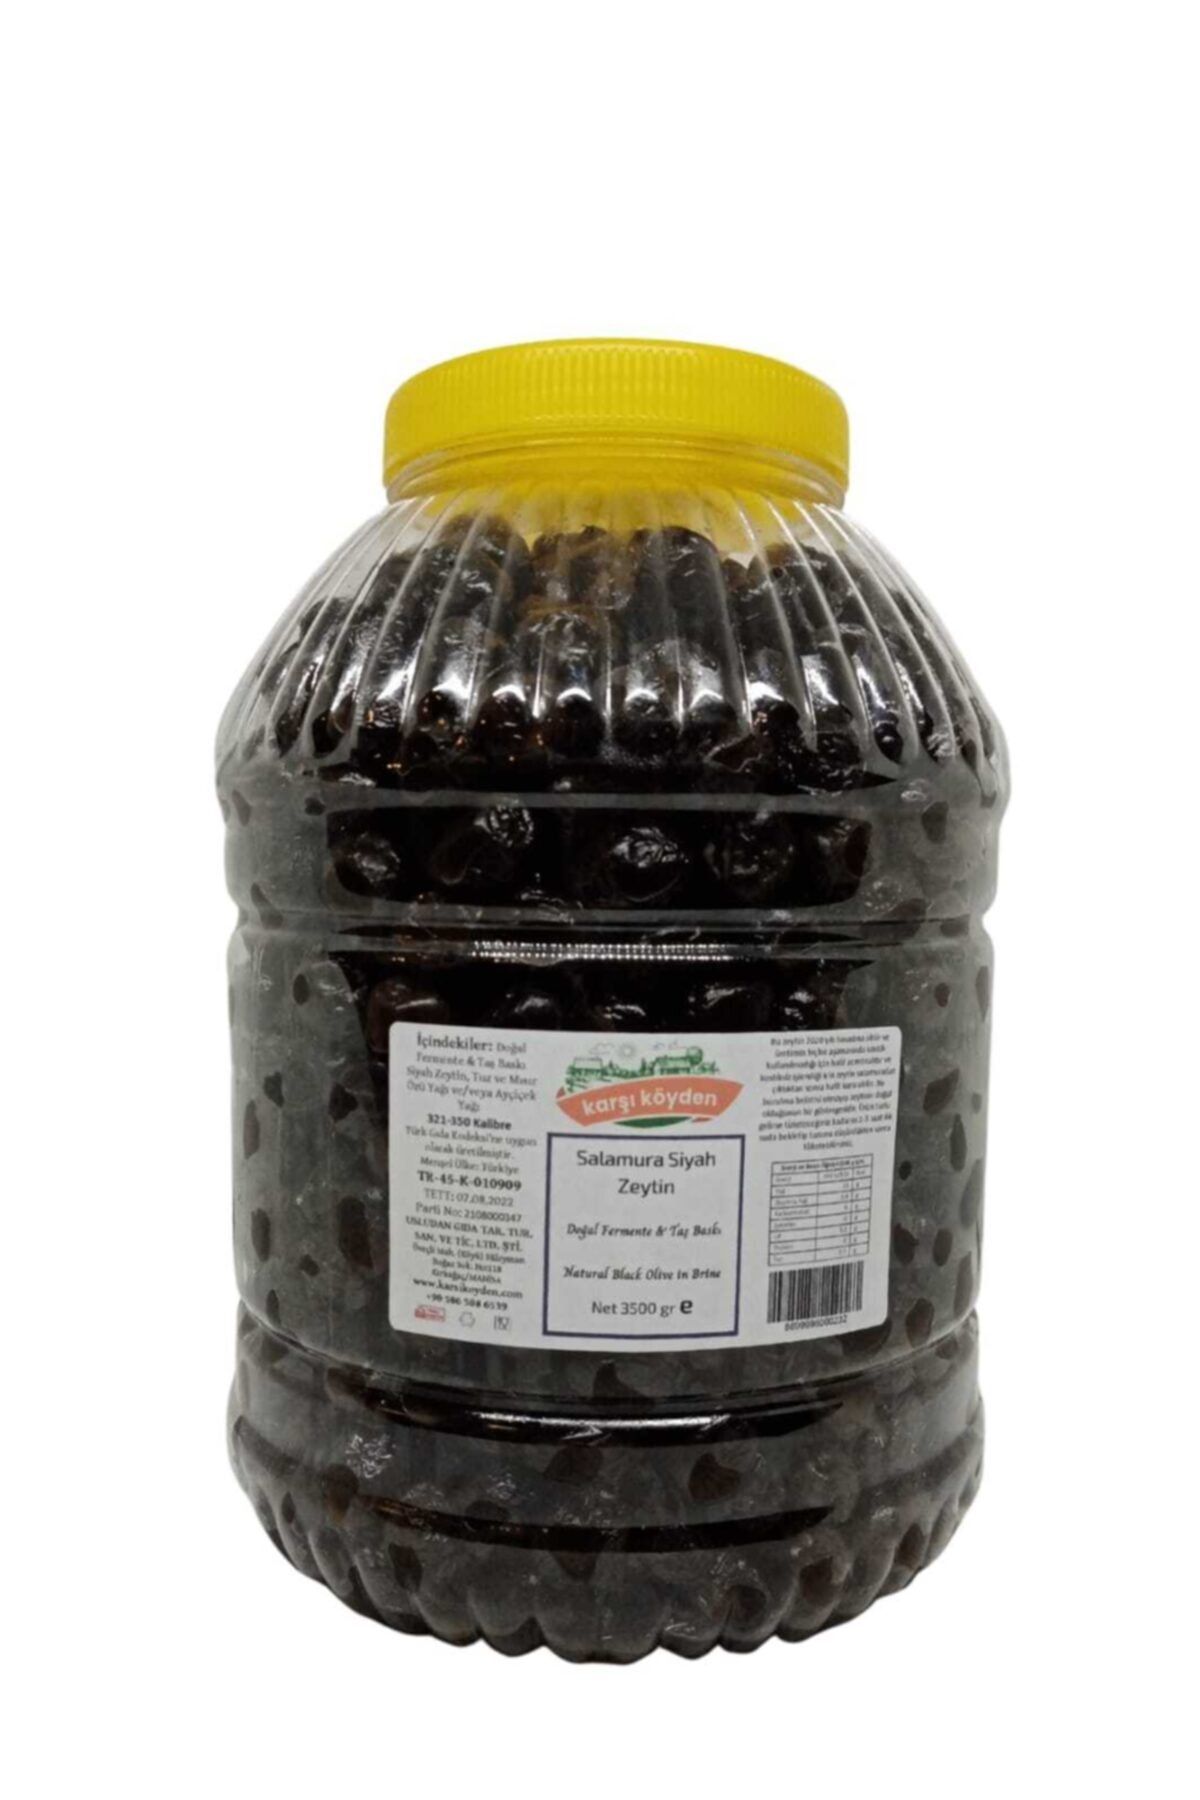 Karşı Köyden Taş Baskı Doğal Fermente Salamura Siyah Zeytin (3500GR - PET KAVANOZ)